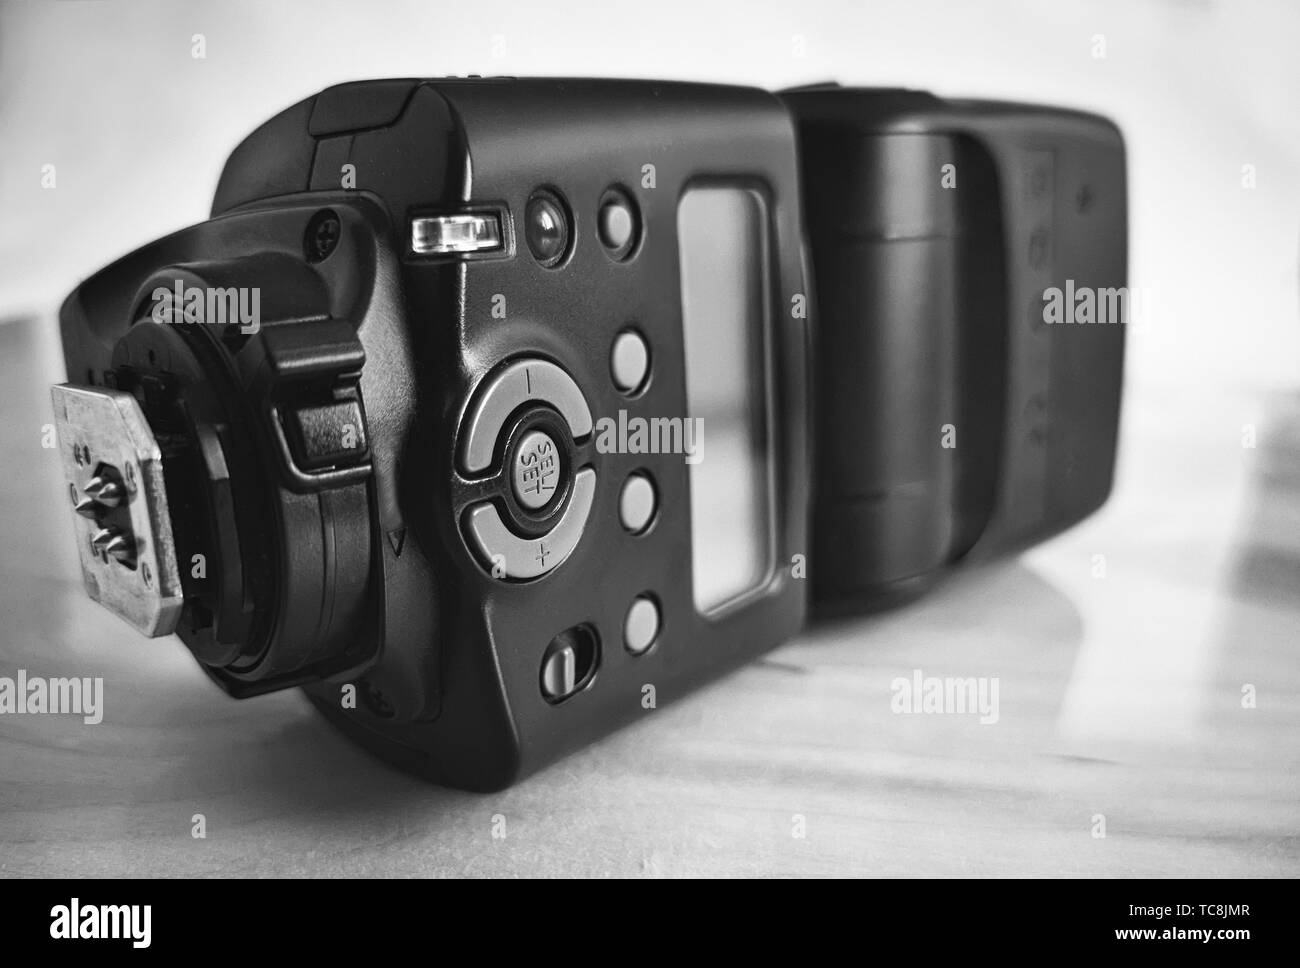 Close-up è un moderno flash per una fotocamera reflex per una migliore illuminazione durante le riprese. Immagine in bianco e nero. Foto Stock